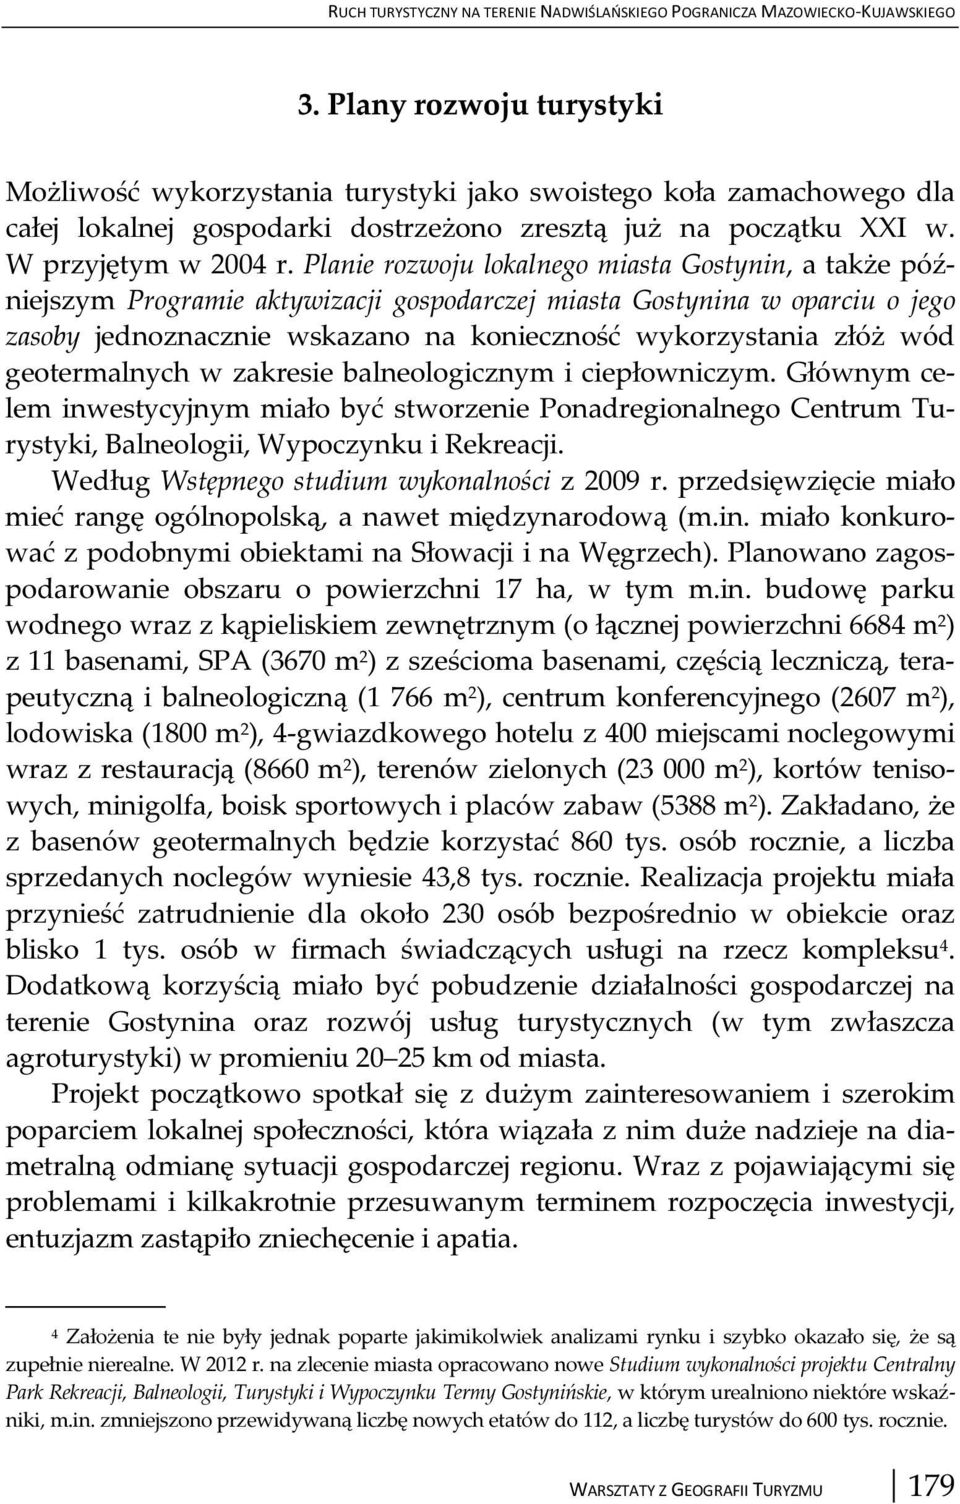 Planie rozwoju lokalnego miasta Gostynin, a także późniejszym Programie aktywizacji gospodarczej miasta Gostynina w oparciu o jego zasoby jednoznacznie wskazano na konieczność wykorzystania złóż wód